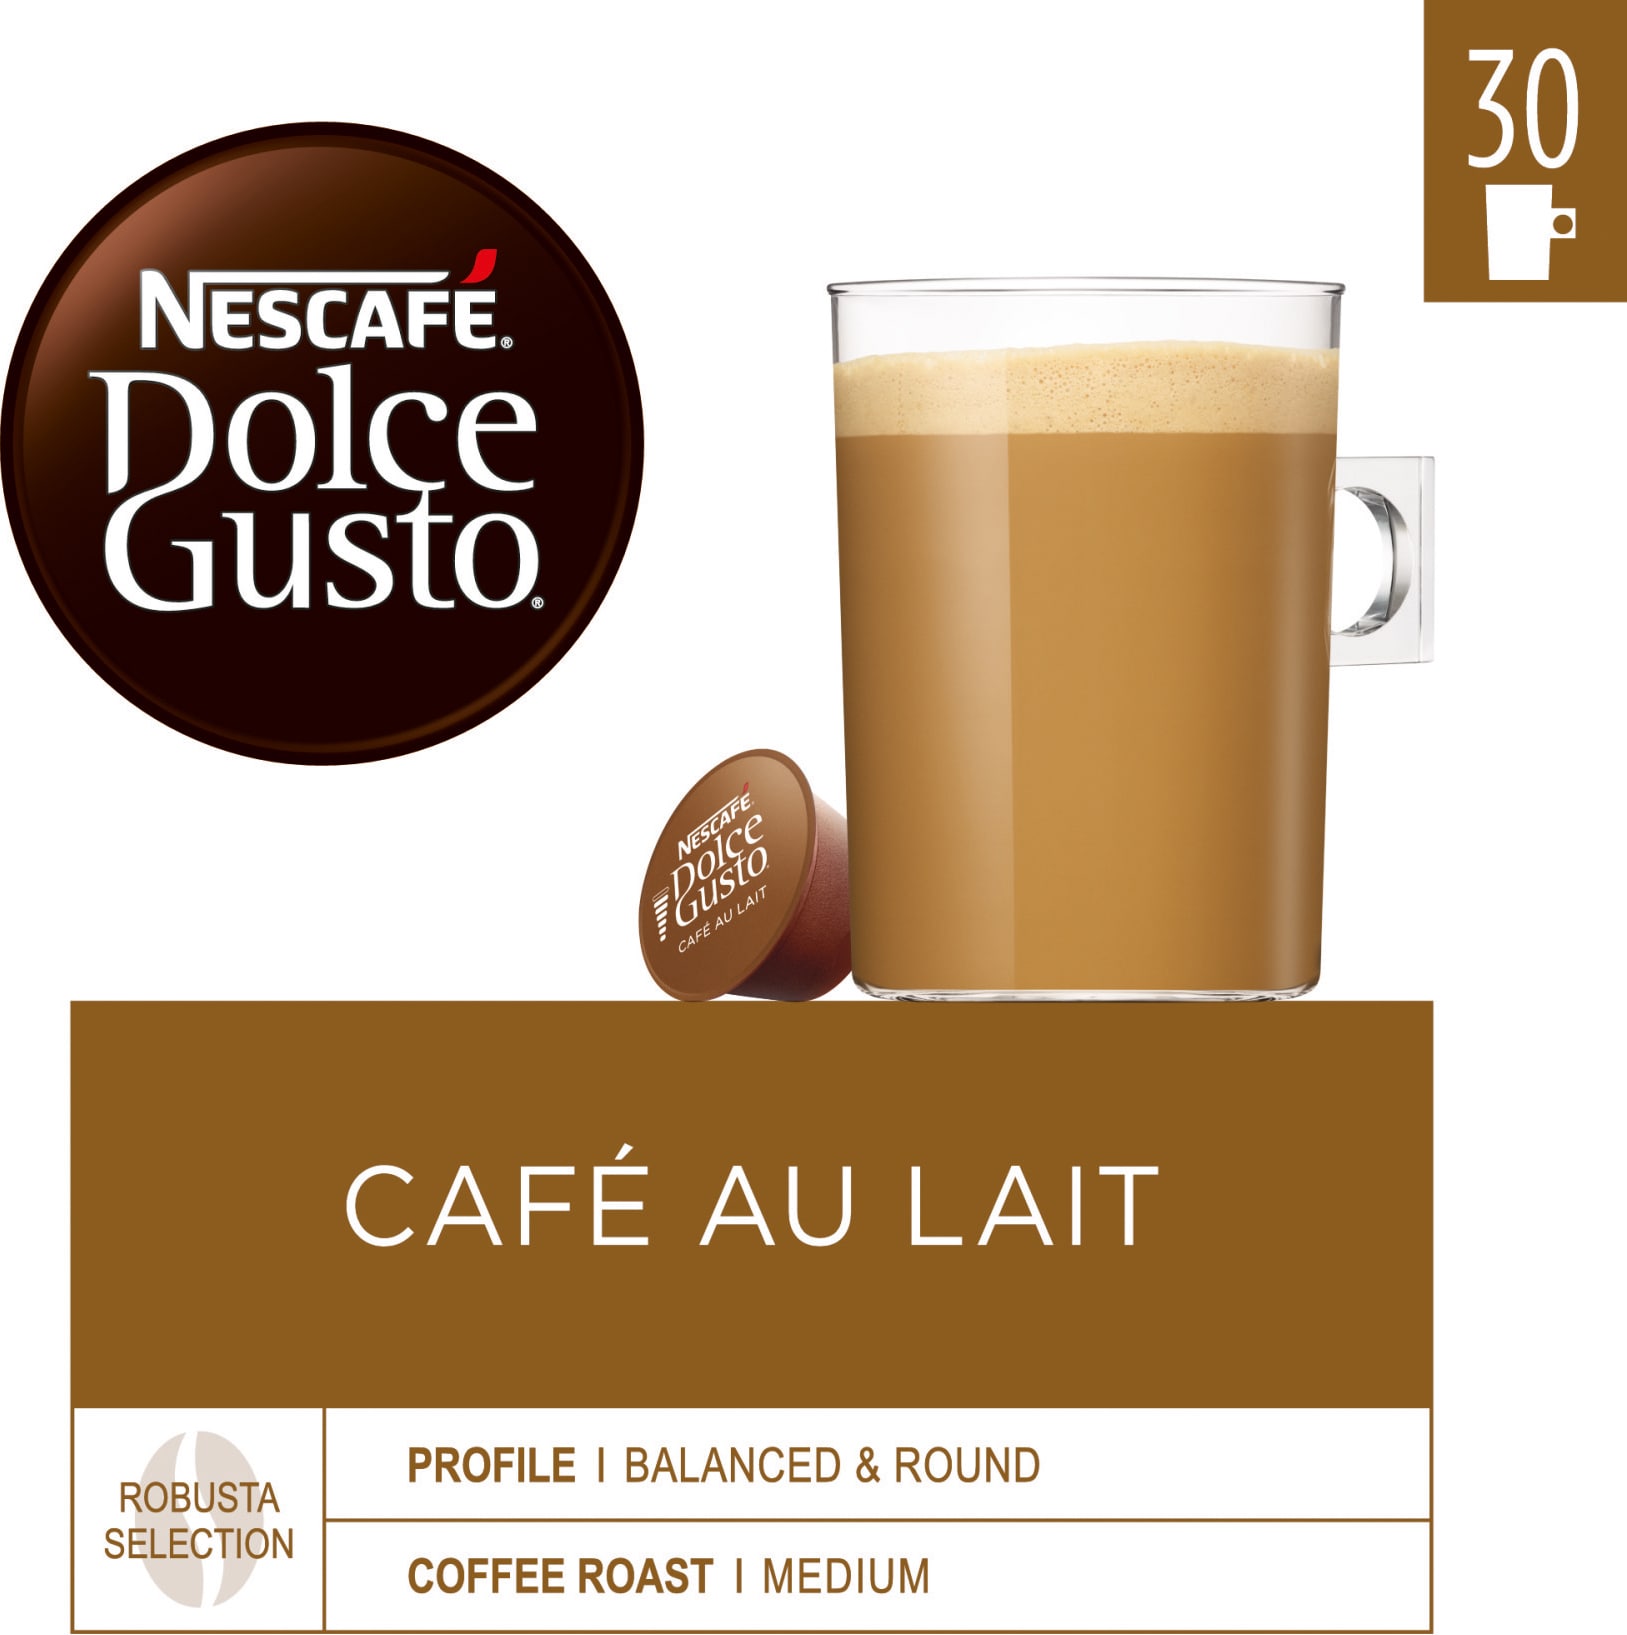 NescafÃ¨ Dolce Gusto kapsler - Café Au Lait thumbnail